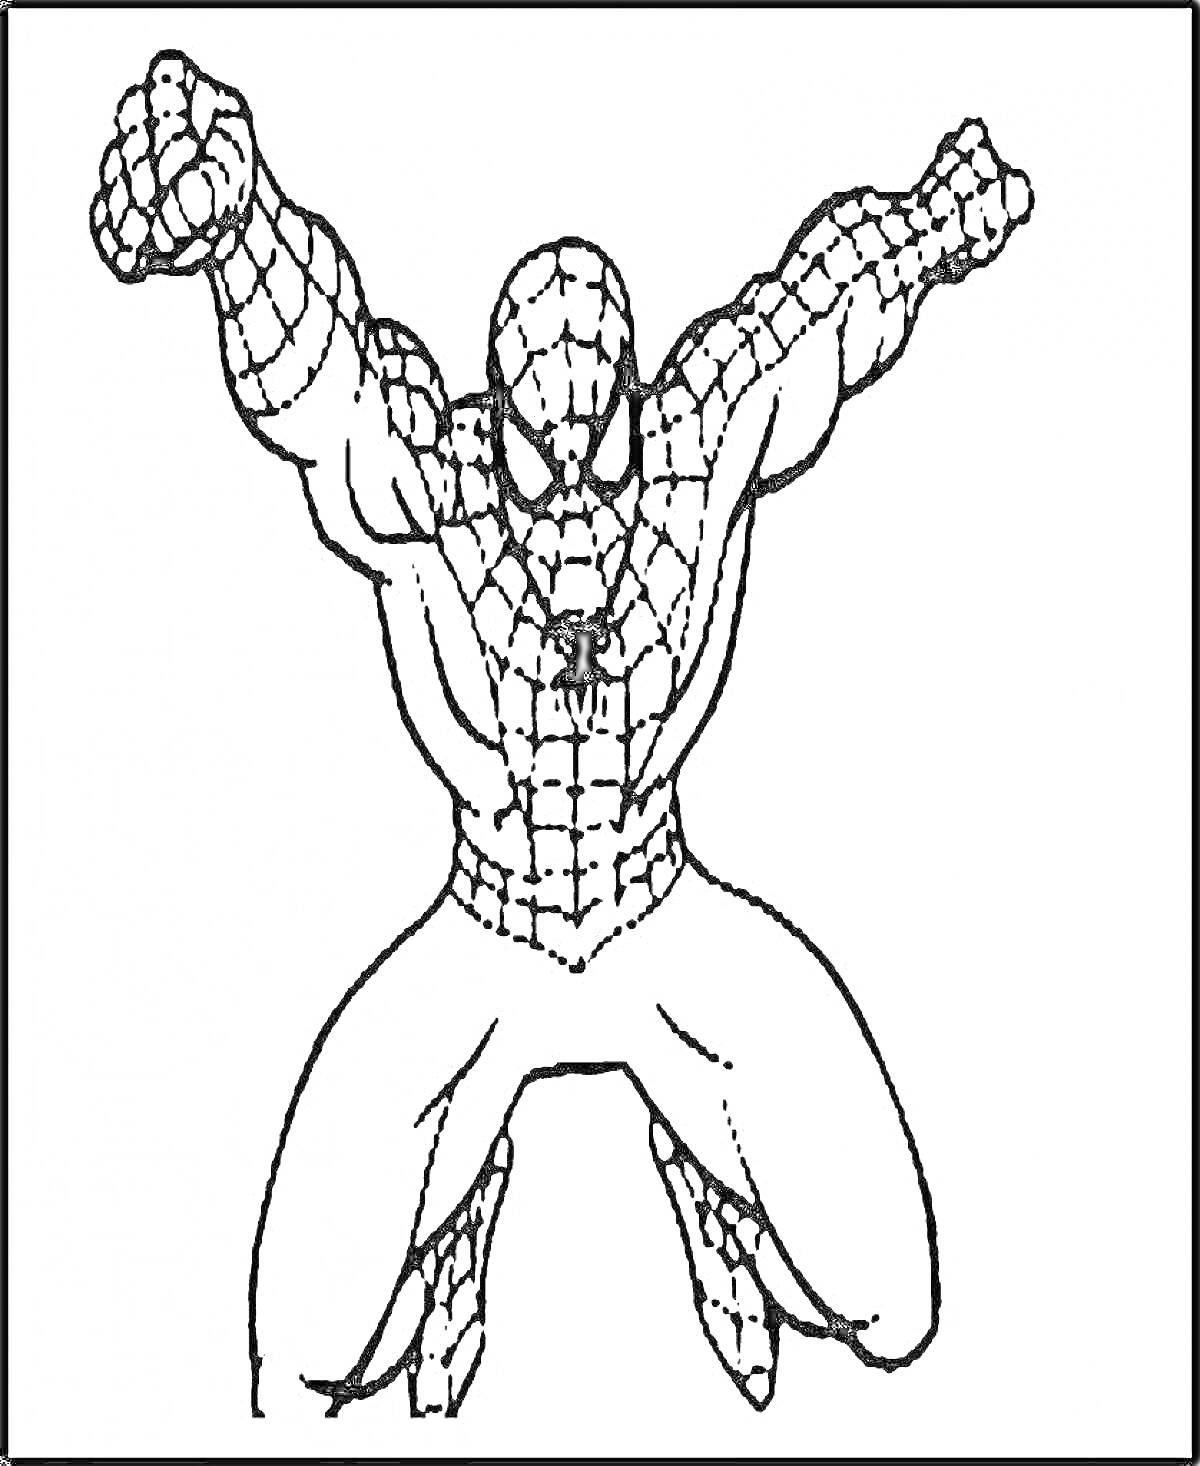 Раскраска Злой Человек-Паук в прыжке с поднятыми руками